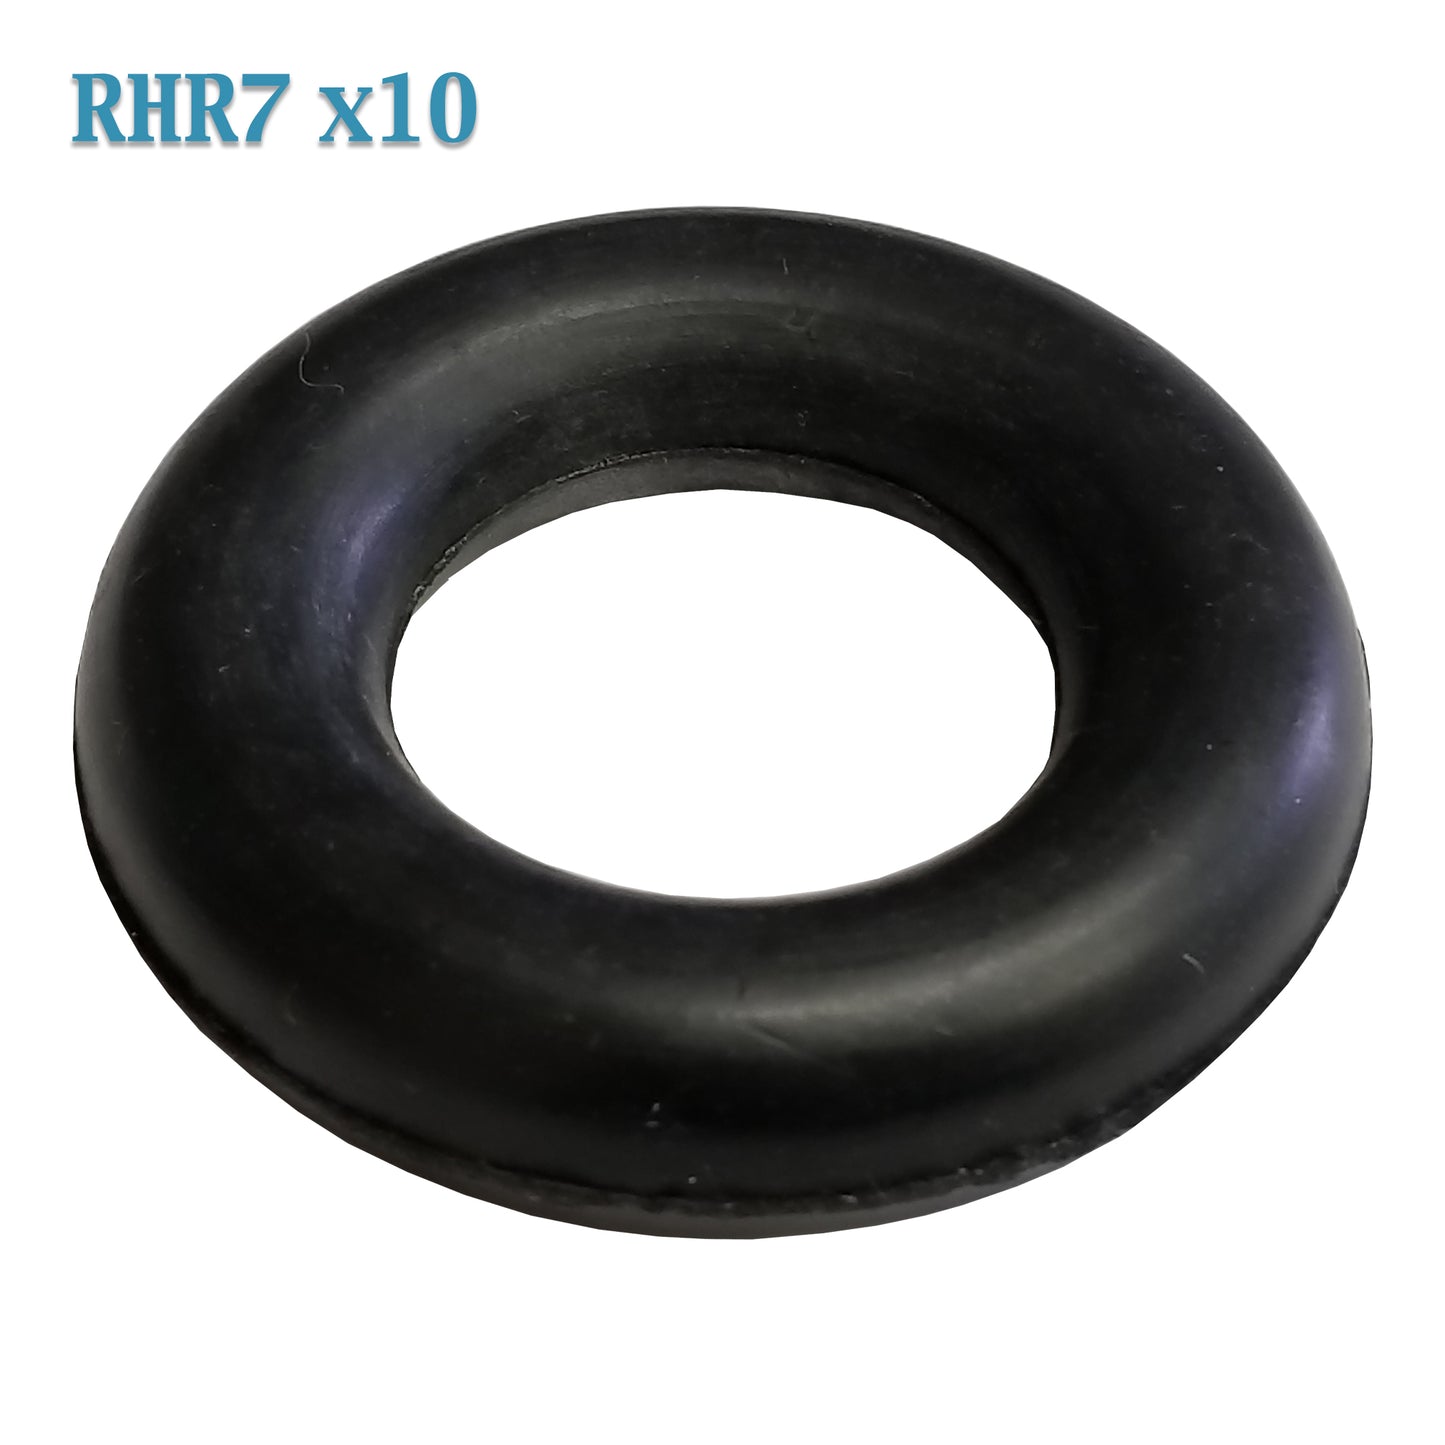 RHR7 1 1/4" O-Ring Exhaust Mount Rubber Insulator Grommet Hanger Bushing Support